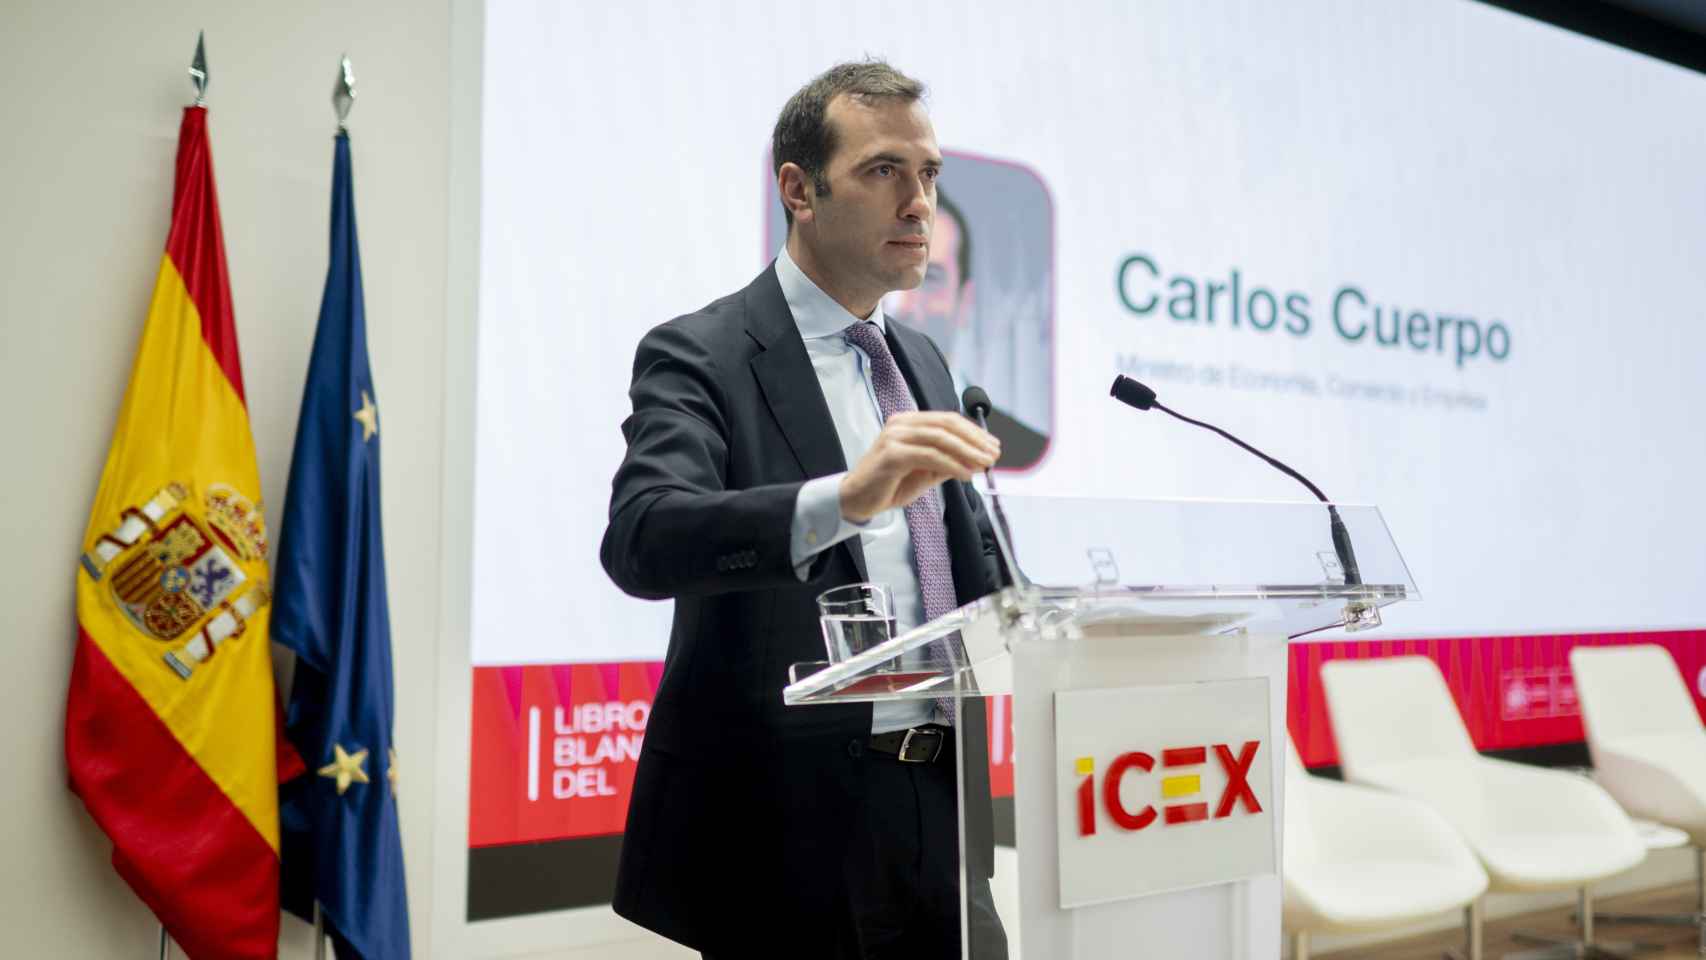 El ministro de Economía, Comercio y Empresa, Carlos Cuerpo, durante la clausura de un acto del ICEX el pasado 6 de mayo.